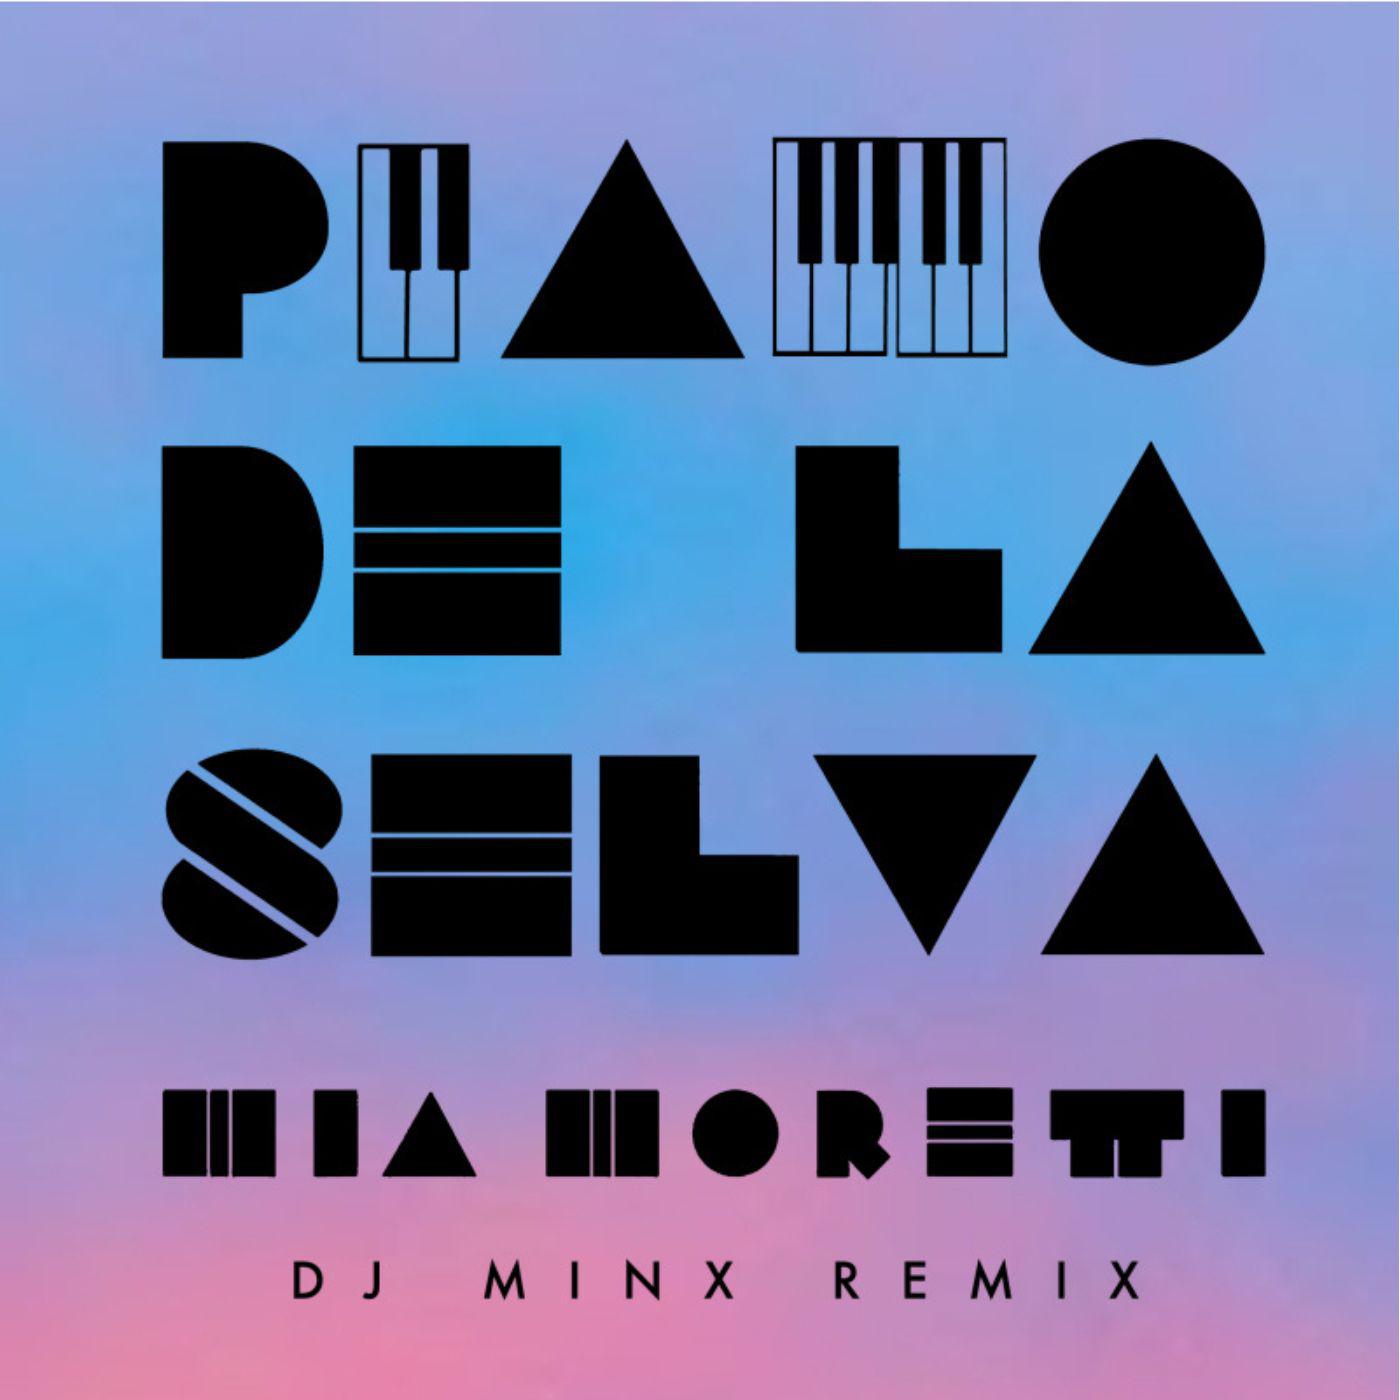 Mia Moretti - Piano de la Selva (DJ Minx Remix)